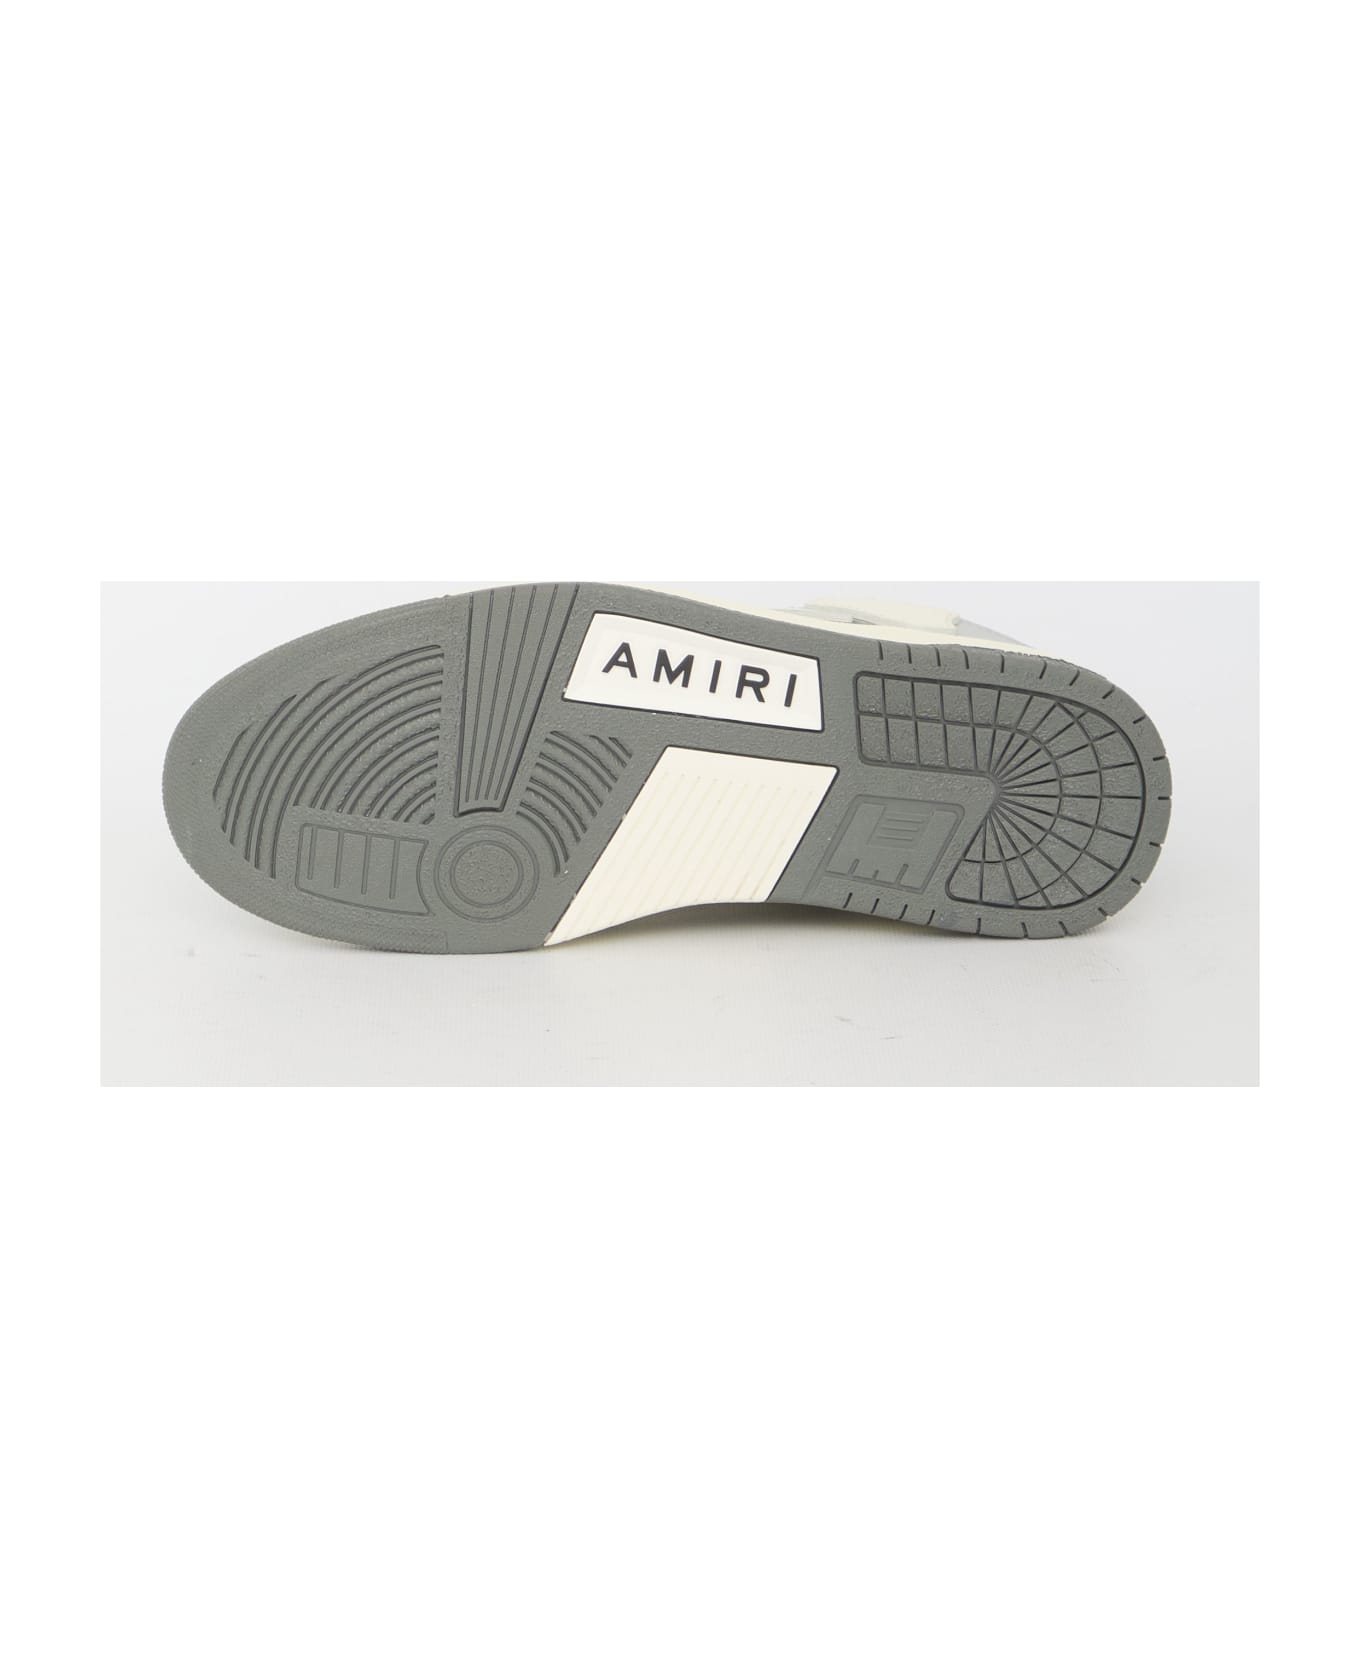 AMIRI Skel Top Low Sneakers - GREY